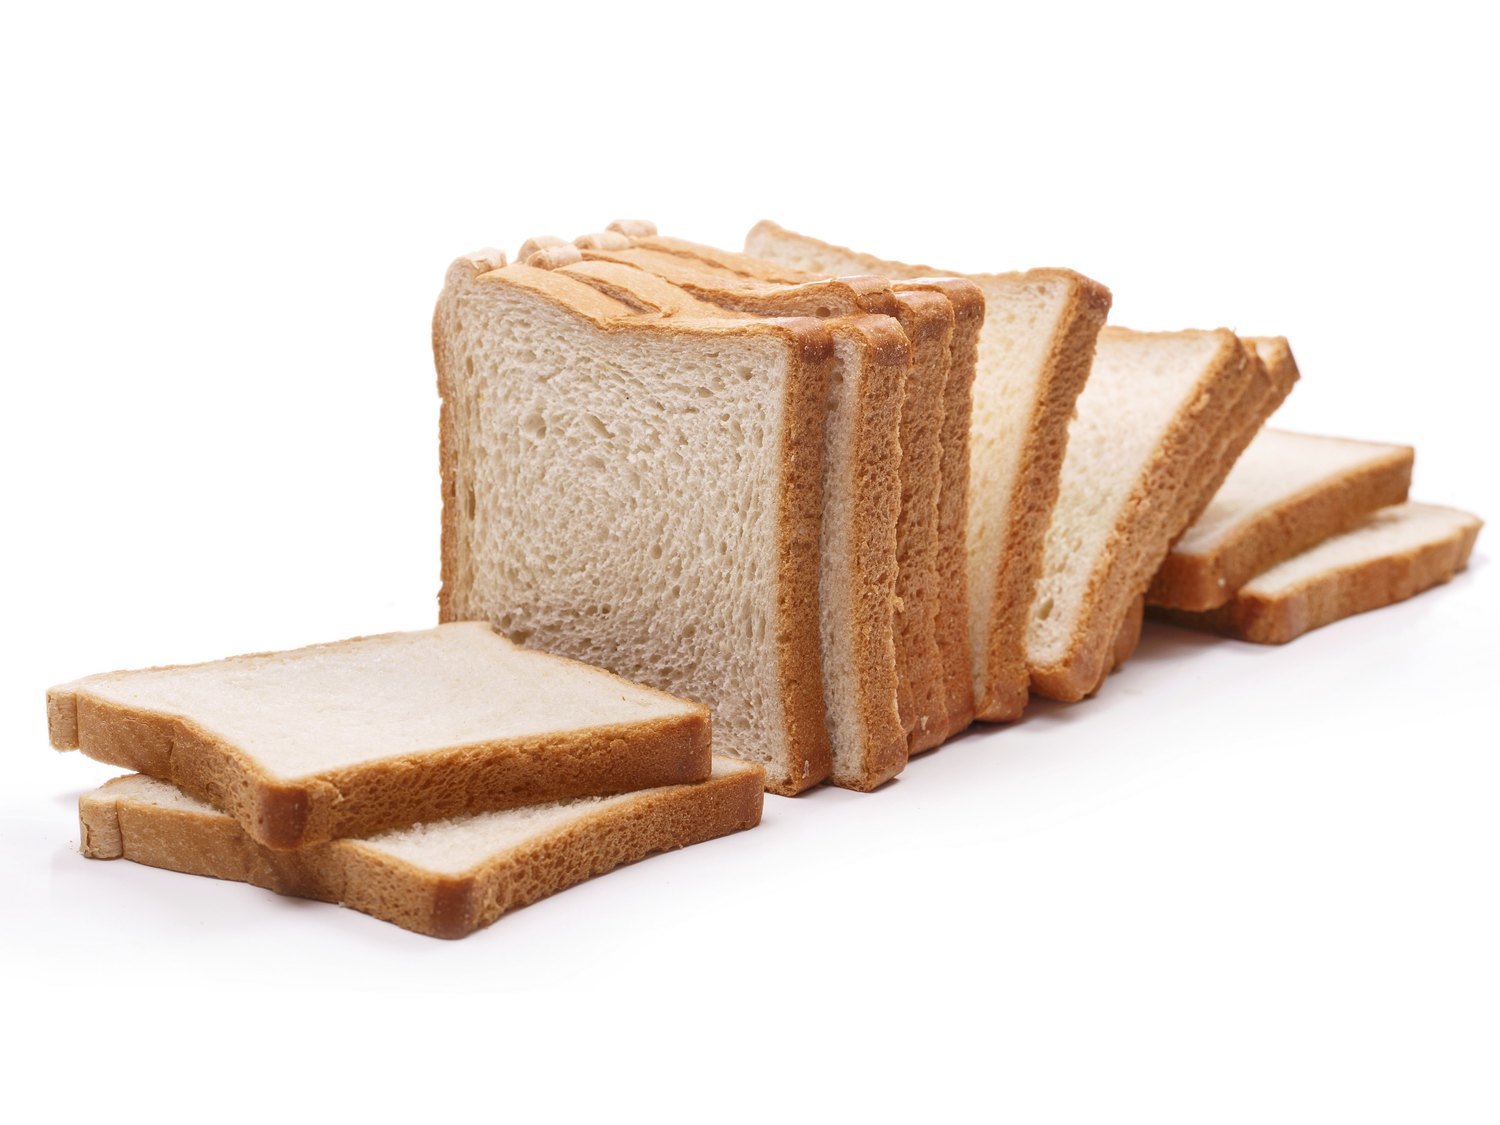 Alerta alimentaria: retiran este popular pan de molde del supermercado y piden evitar su consumo